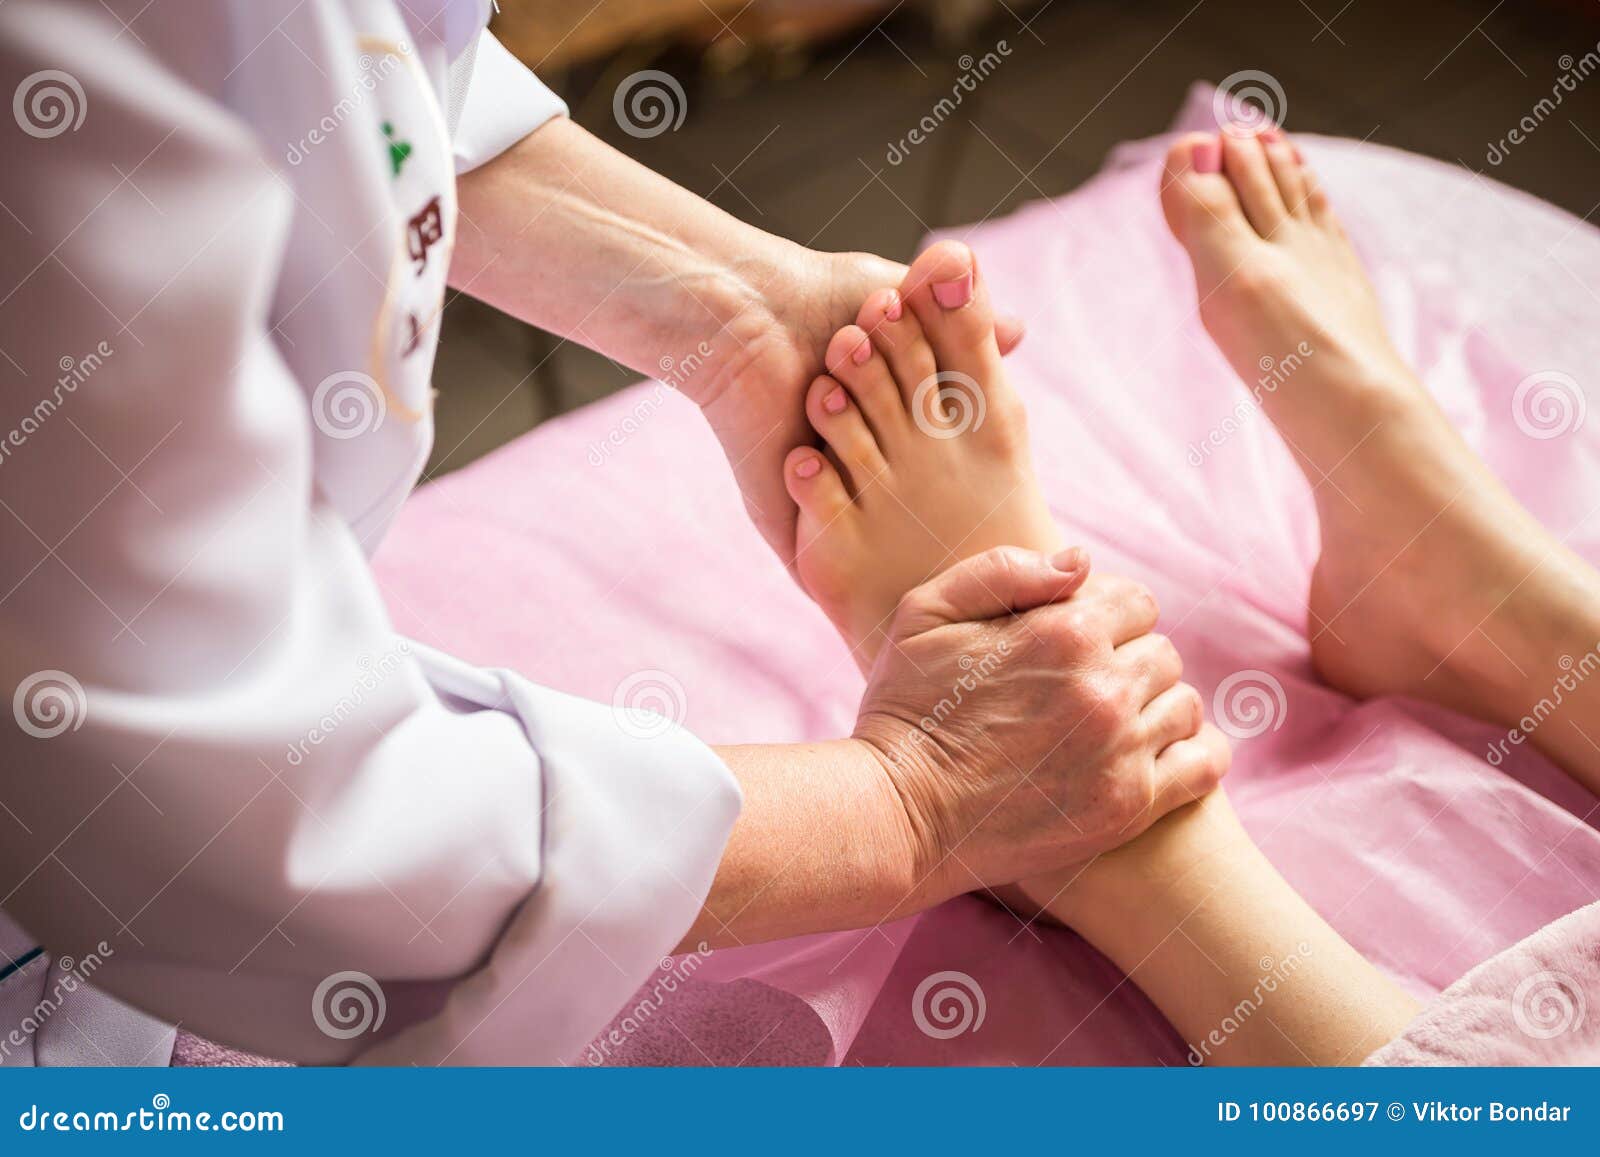 Foot Massage In Spa Salon CloseupYoung Woman Havin